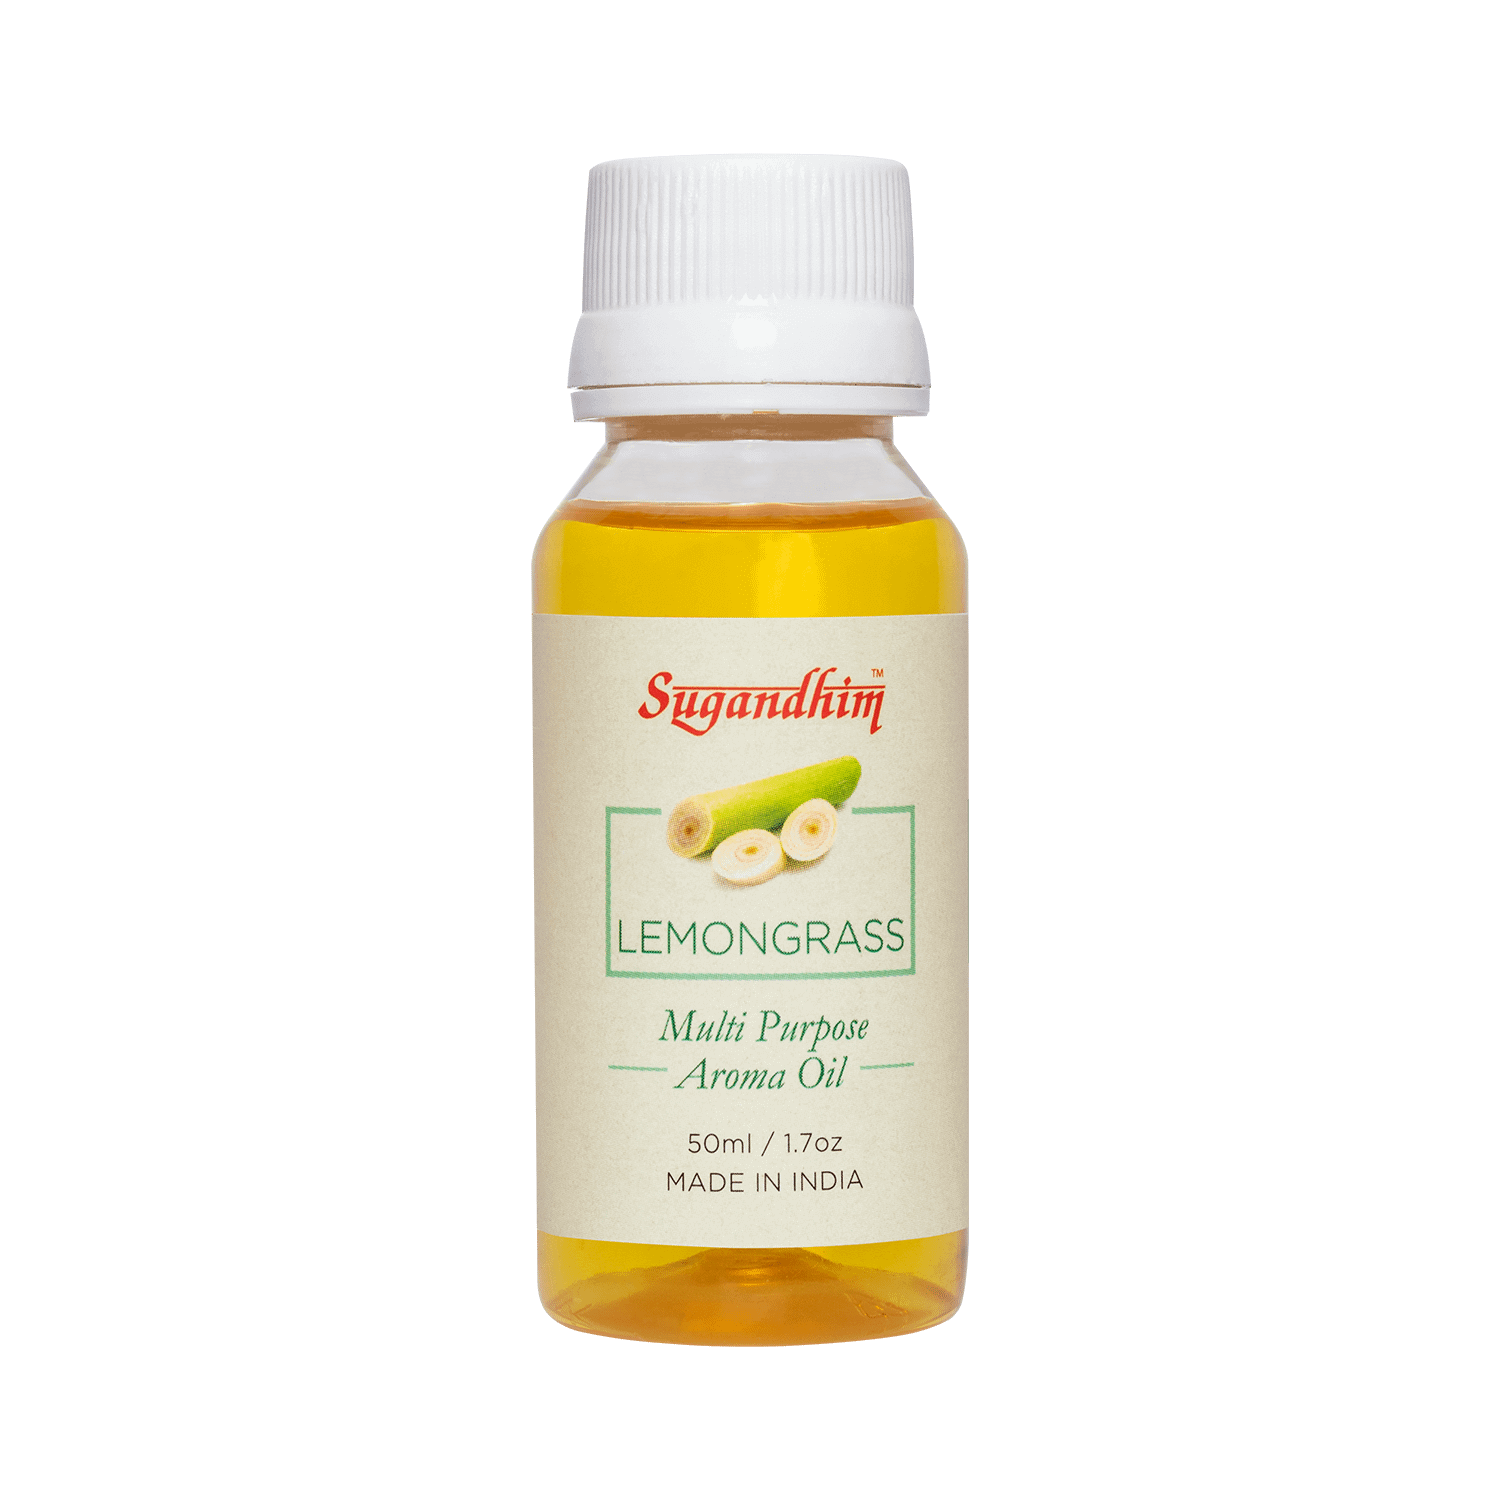 Aroma Oil Multi Purpose Lemongrass - 10ml/50ml/100ml